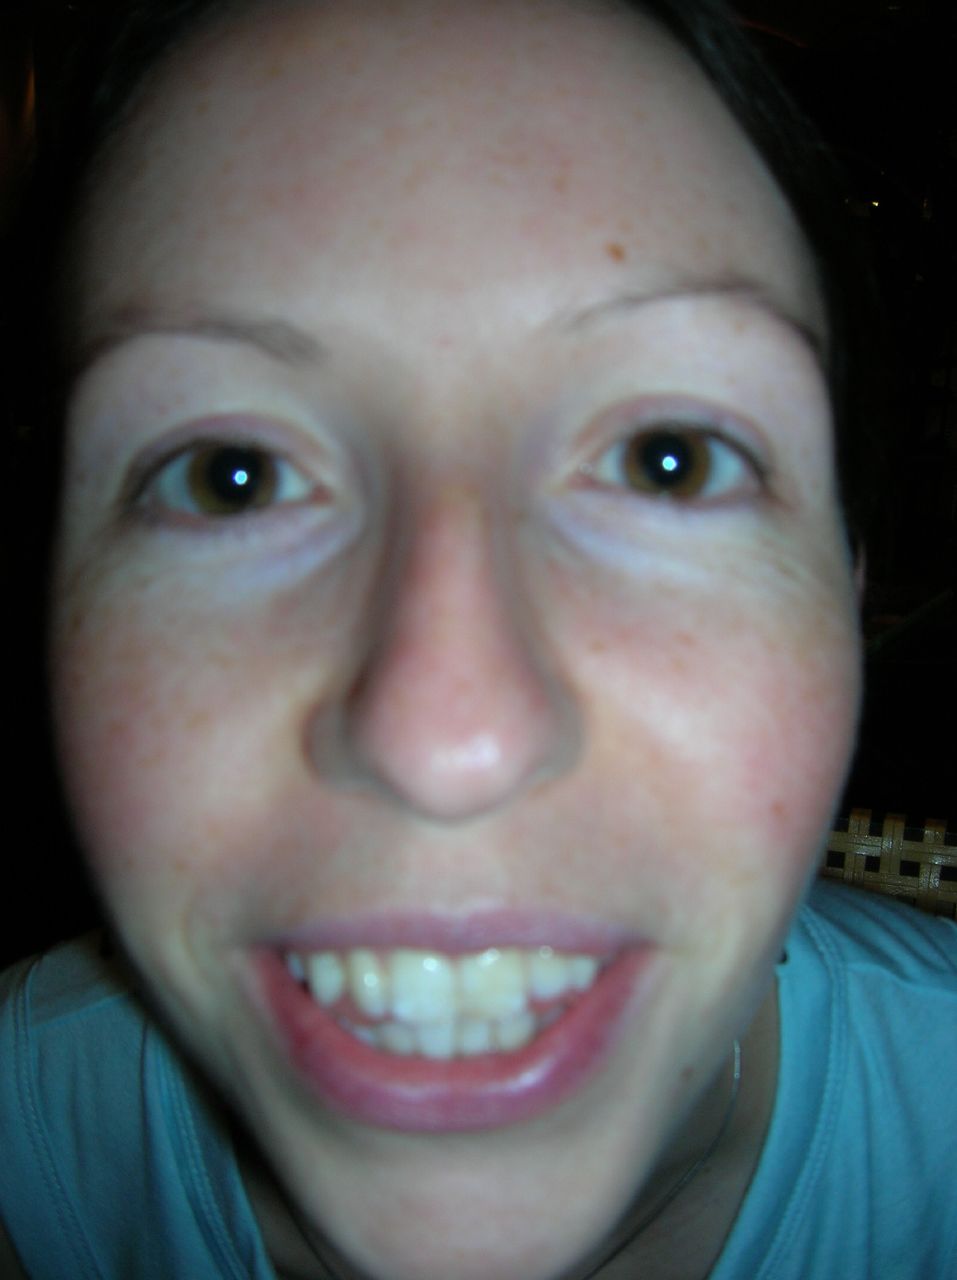 woman taking selfie with white teeth in dark room